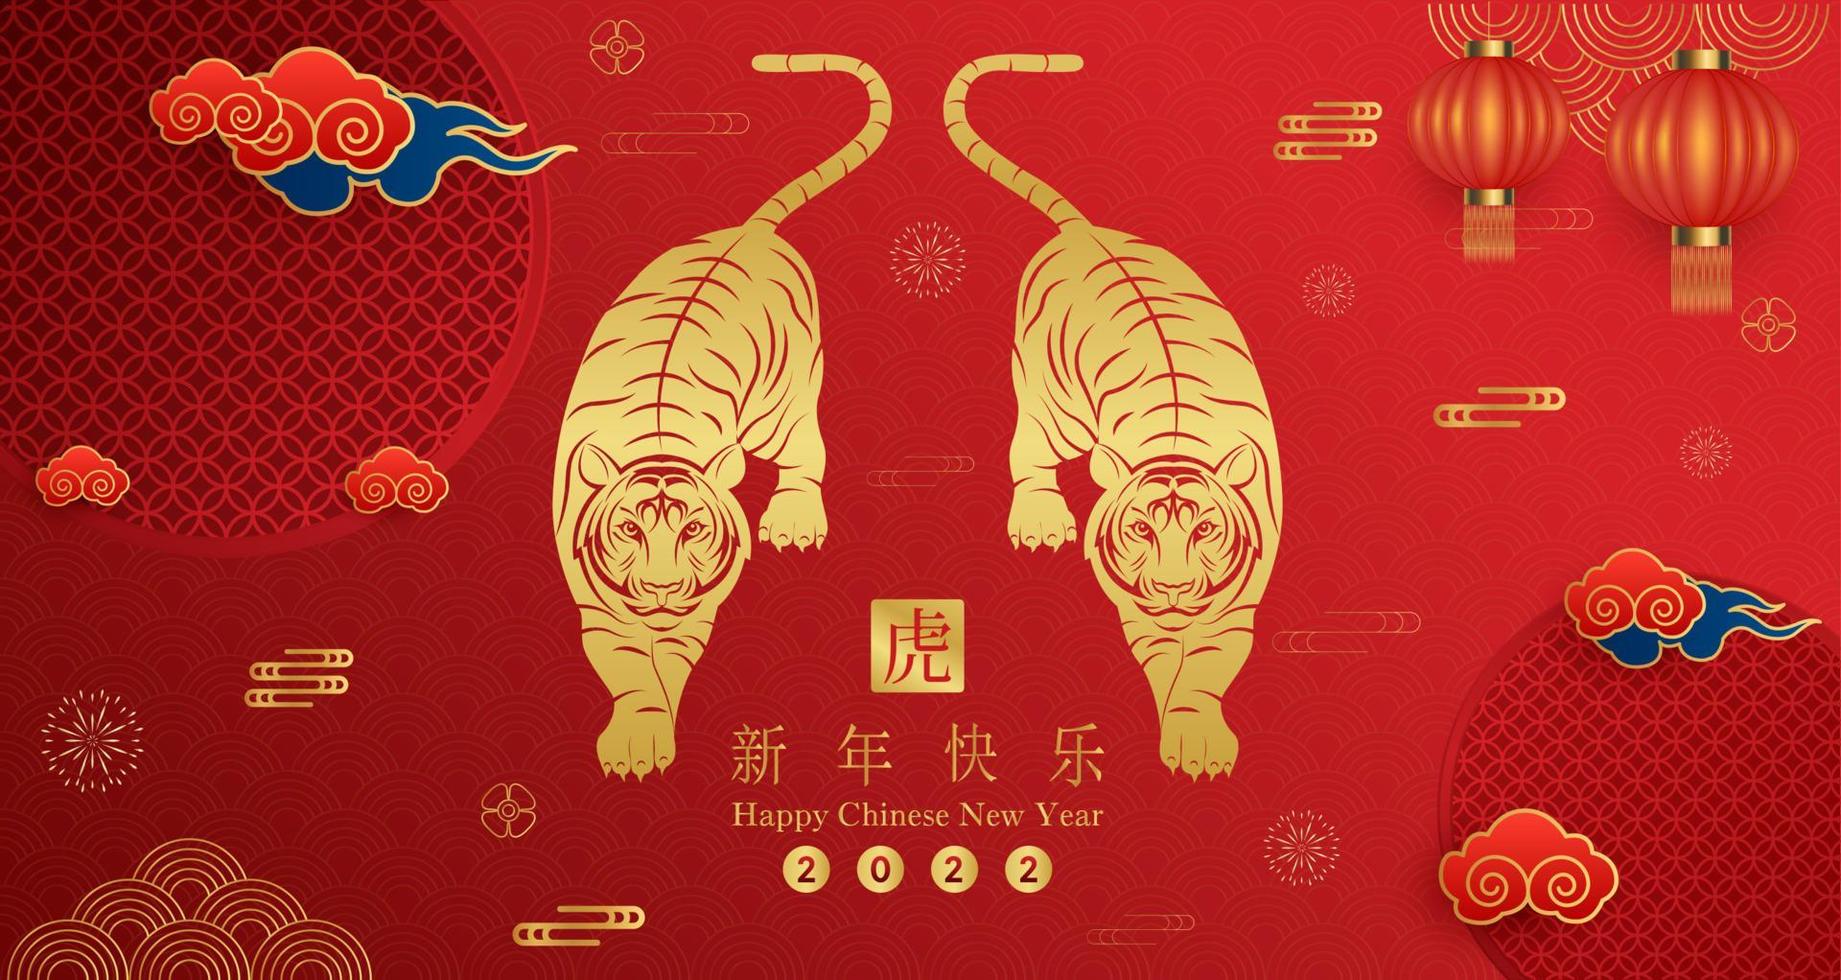 Frohes chinesisches neues jahr 2022, tiger sternzeichen auf rotem farbhintergrund. asiatische Elemente mit Bastel-Tiger-Papierschnitt-Stil. chinesische übersetzung frohes neues jahr 2022, jahr des tigervektors eps10. vektor